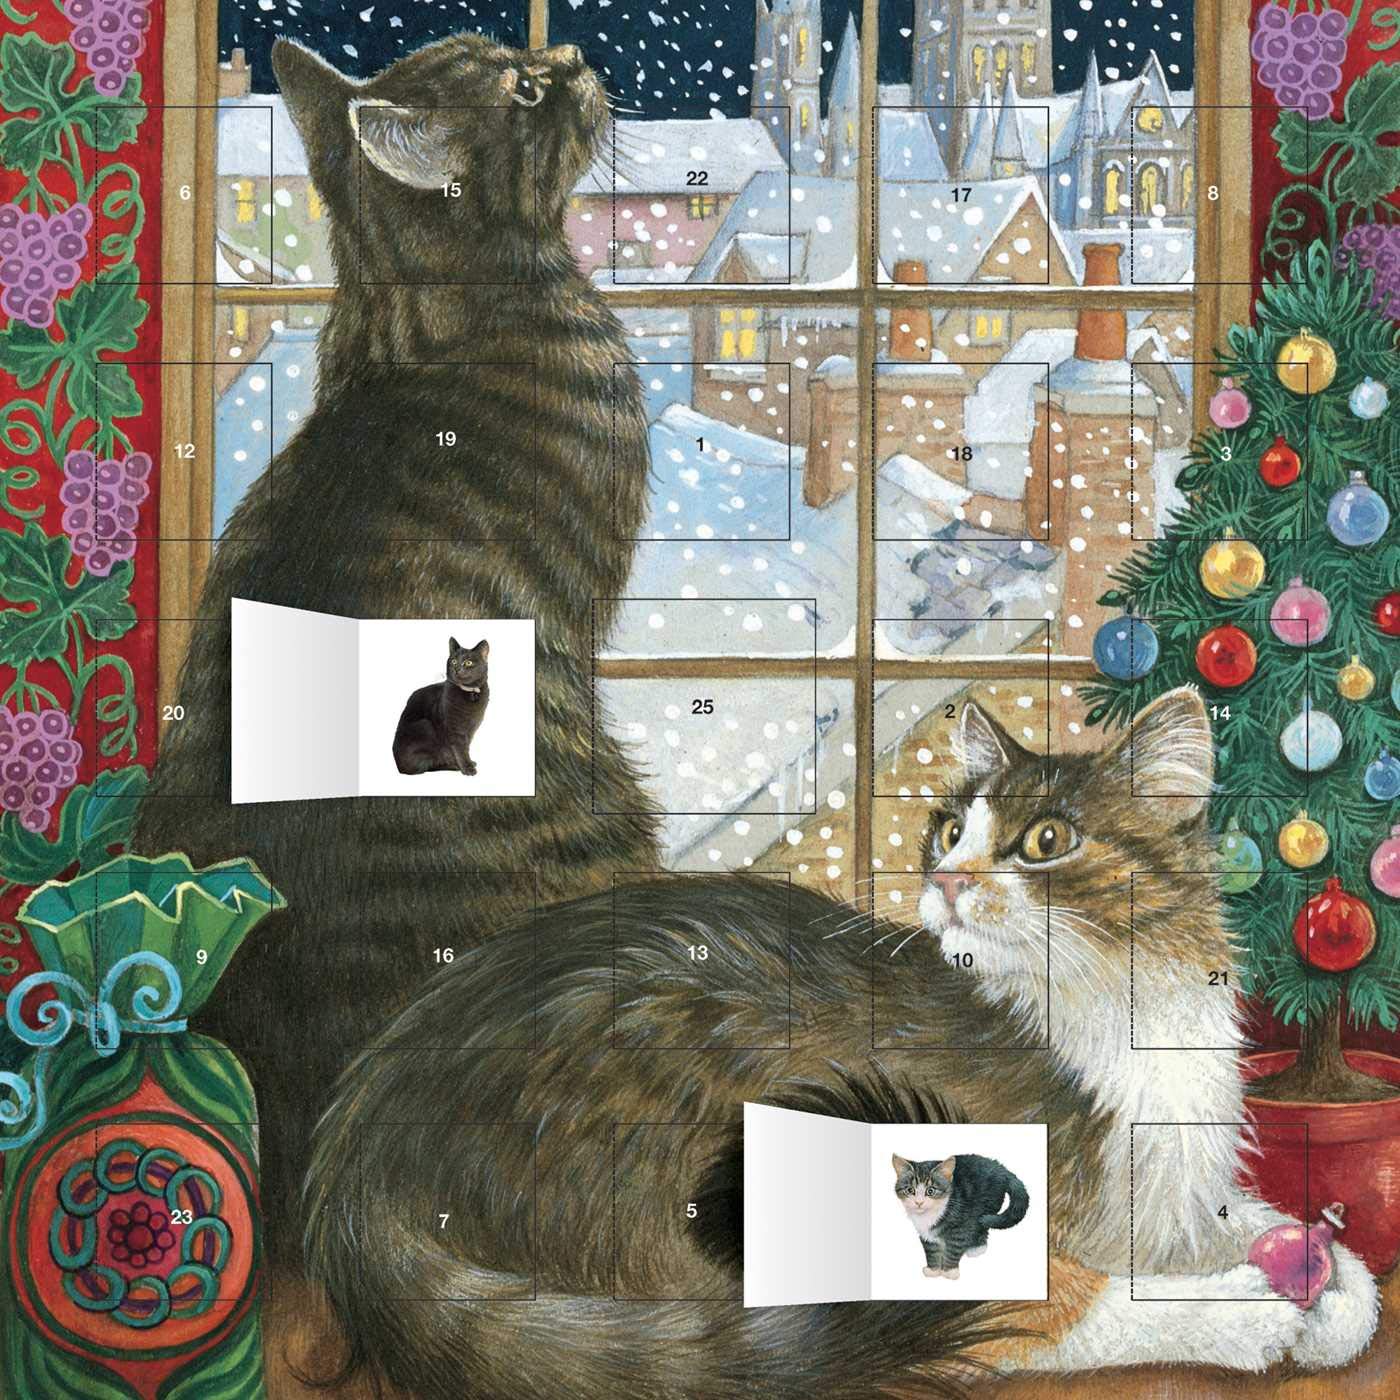 Calendar de Advent - Cats - 2015 | Flame Tree Publishing